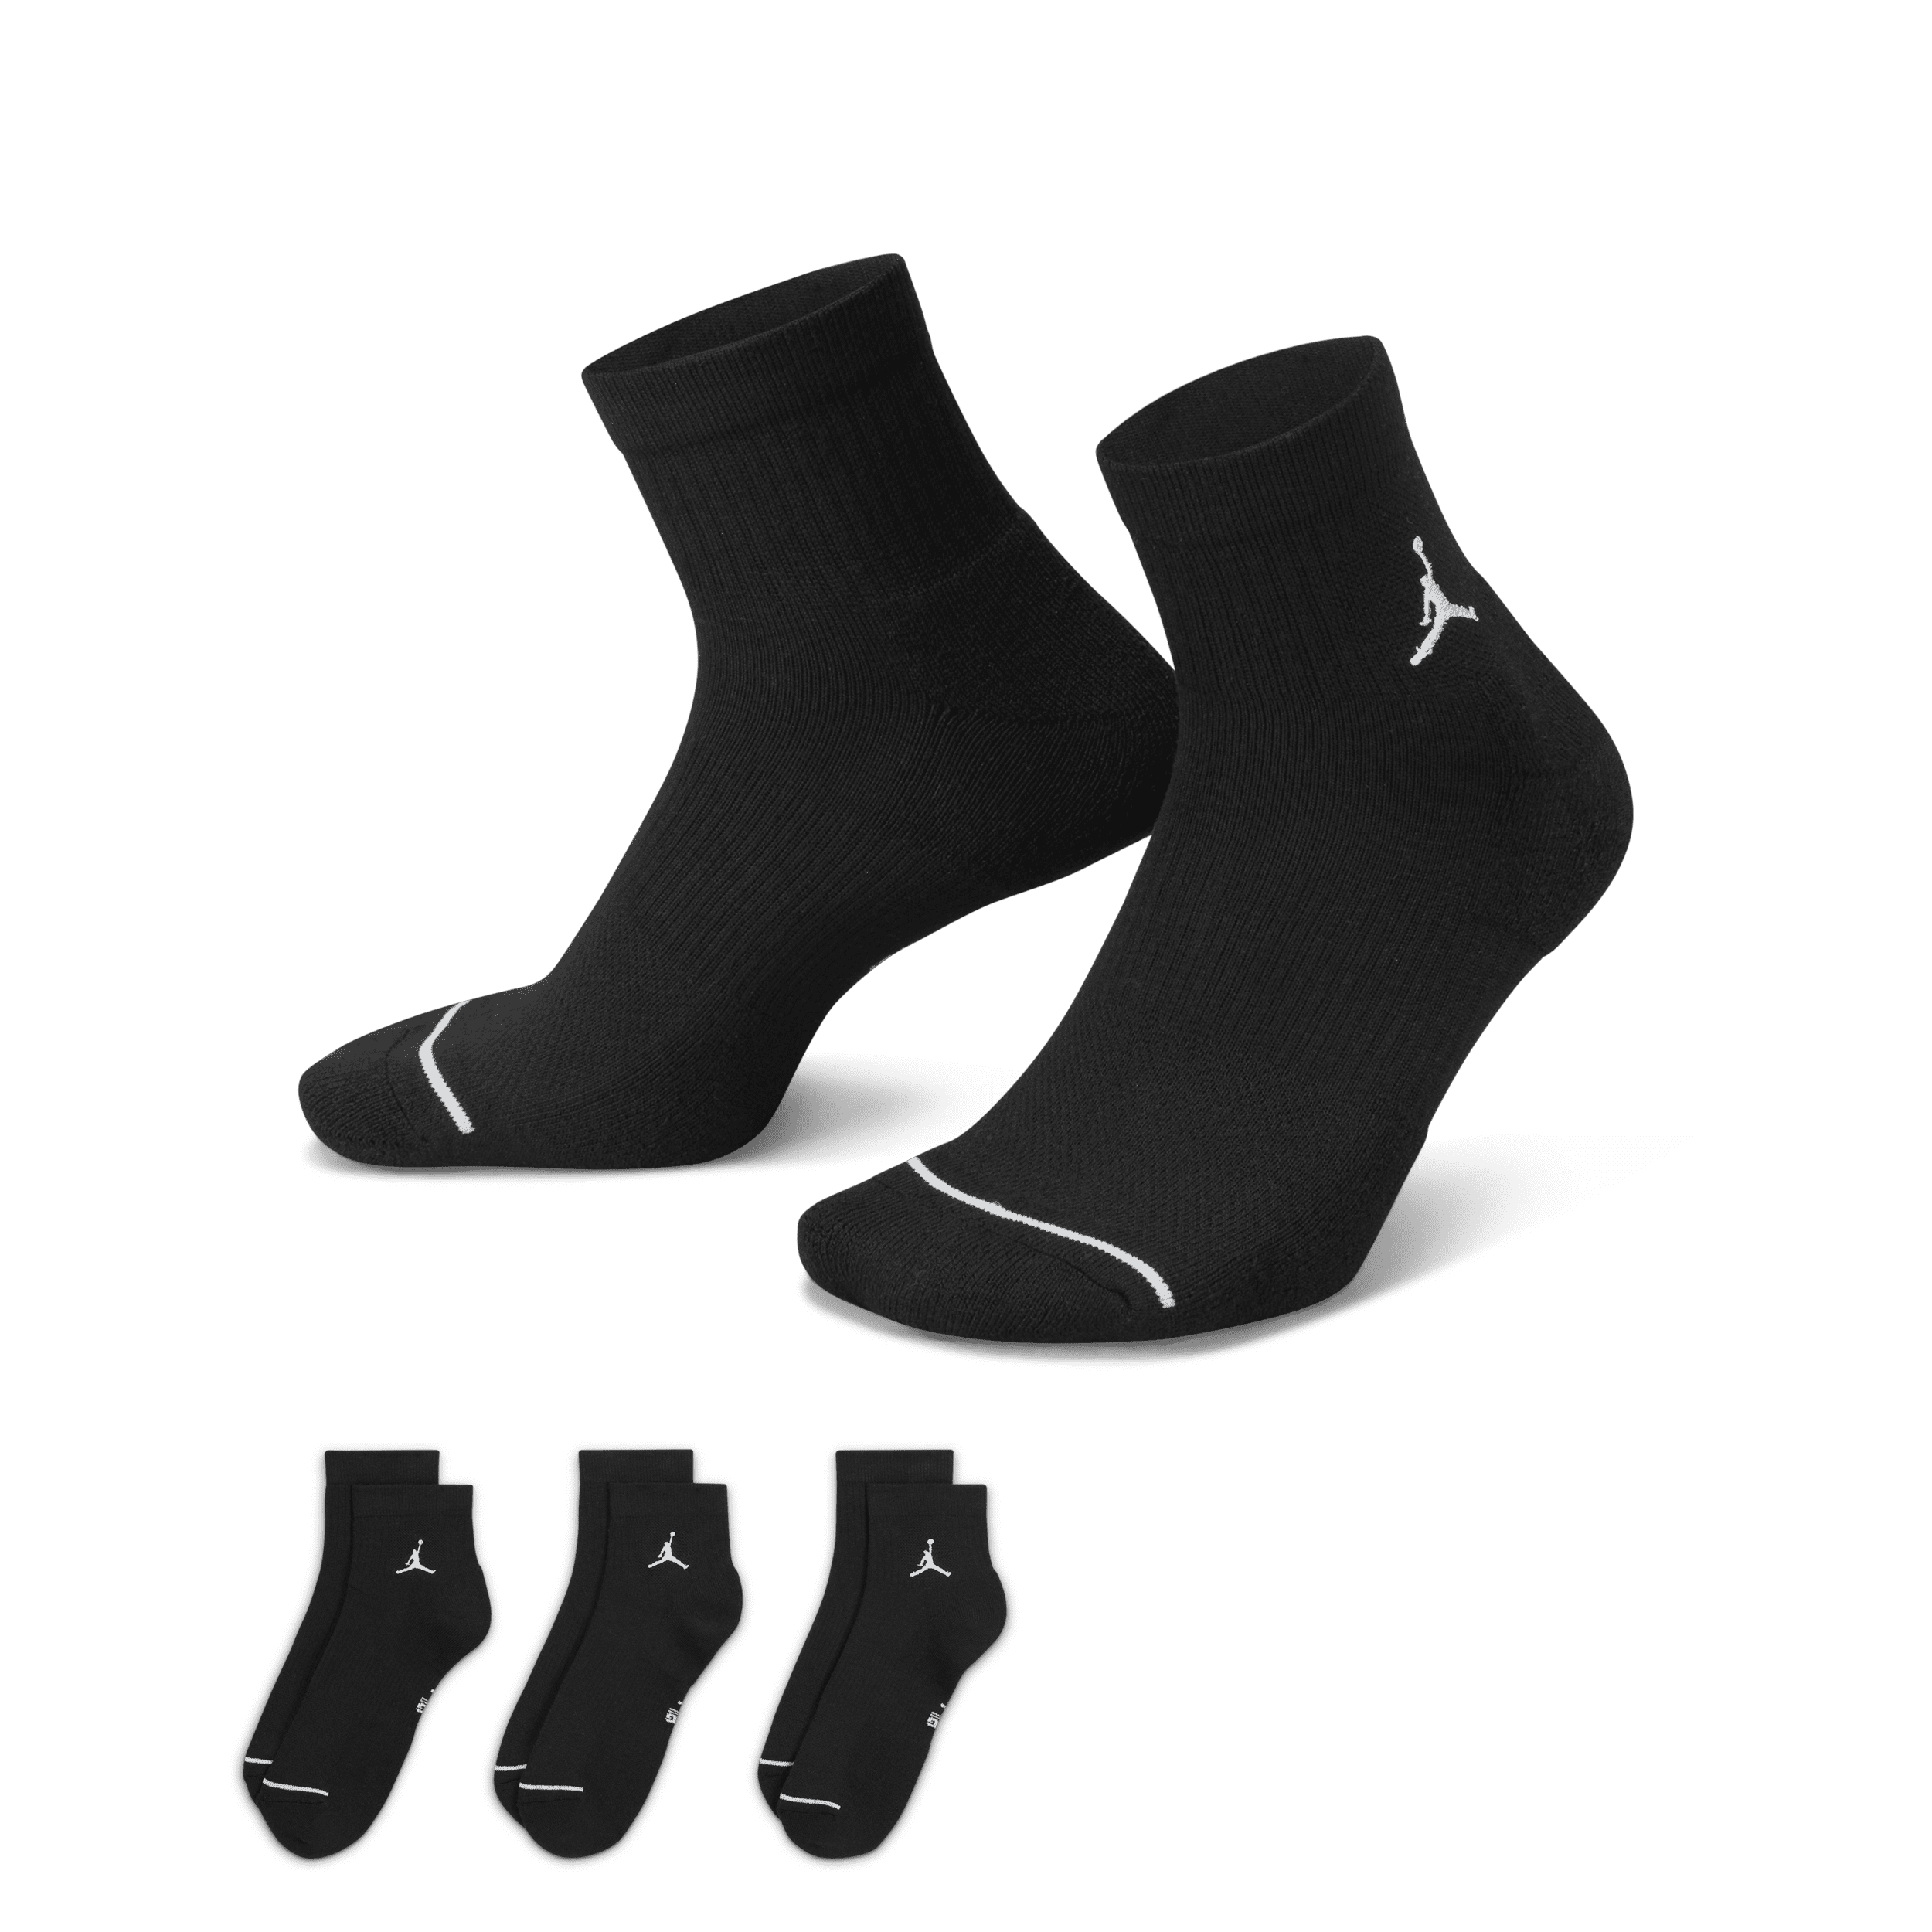 JordanEveryday Ankle Socks (3 Pairs) in UAE. Nike AE